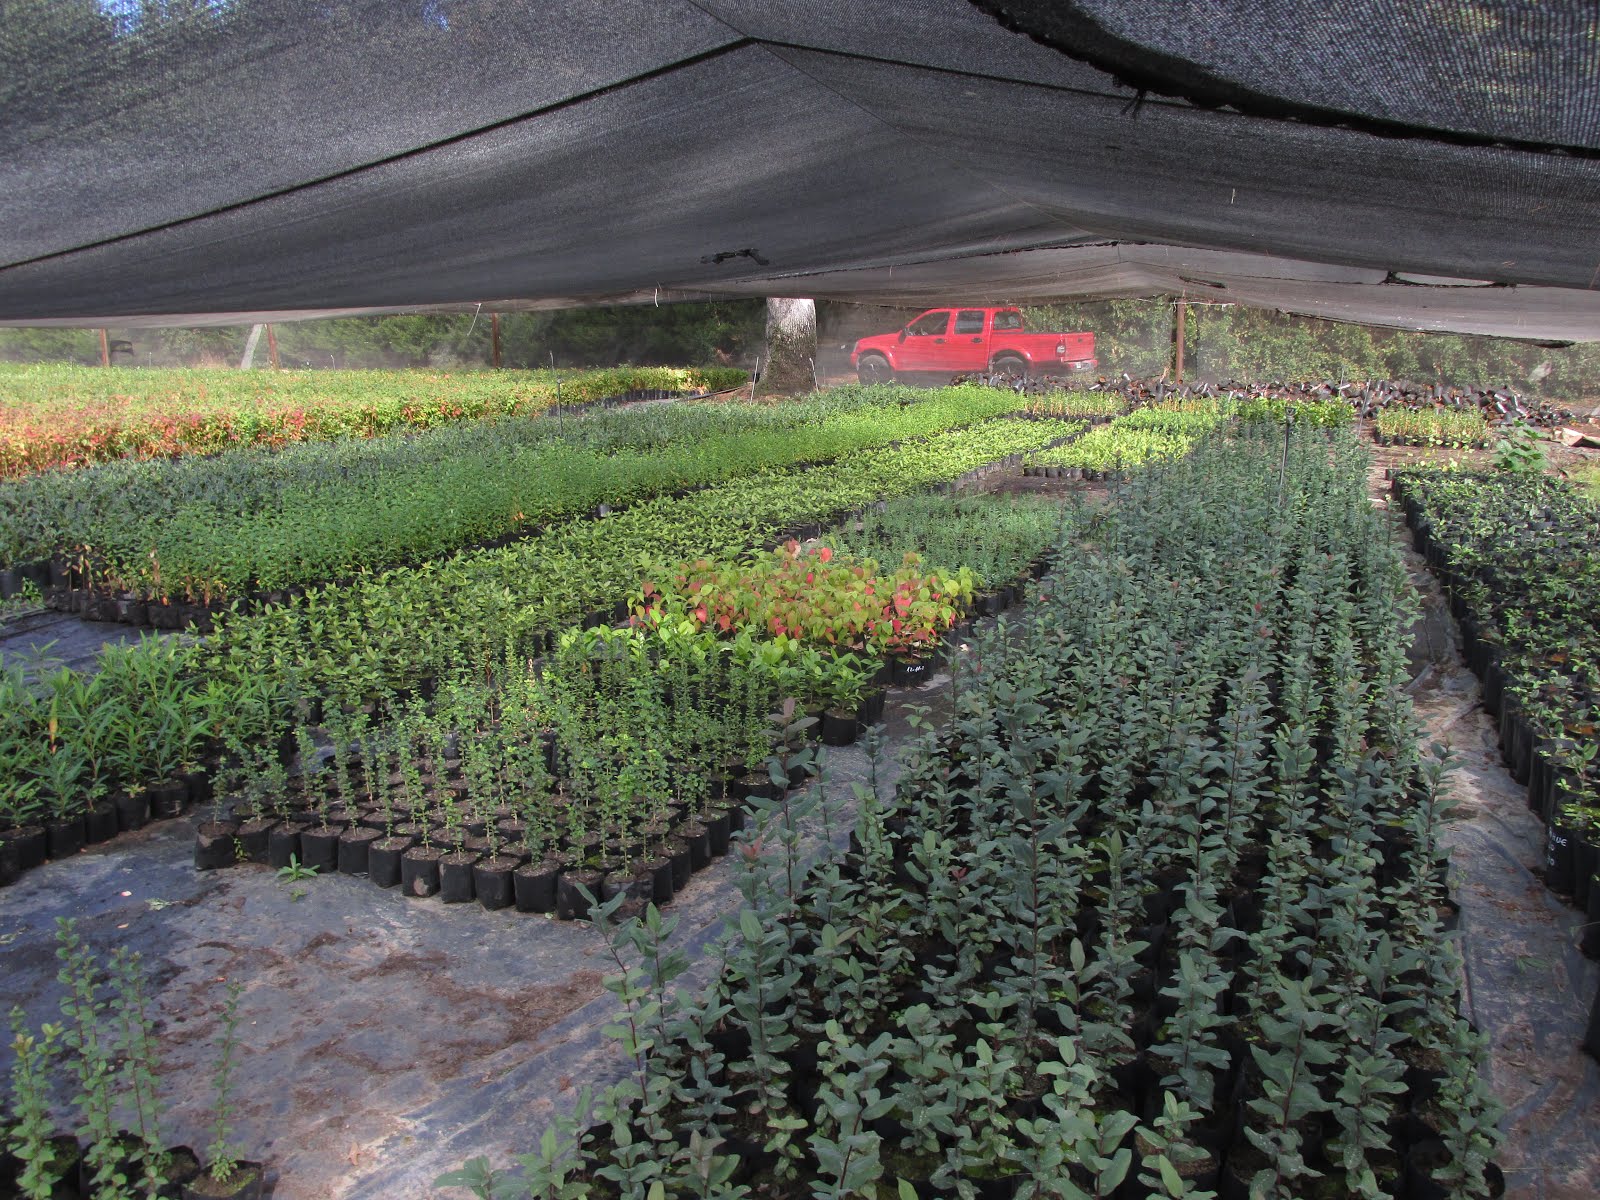 2) Asesorías para propagación de plantas en invernadero